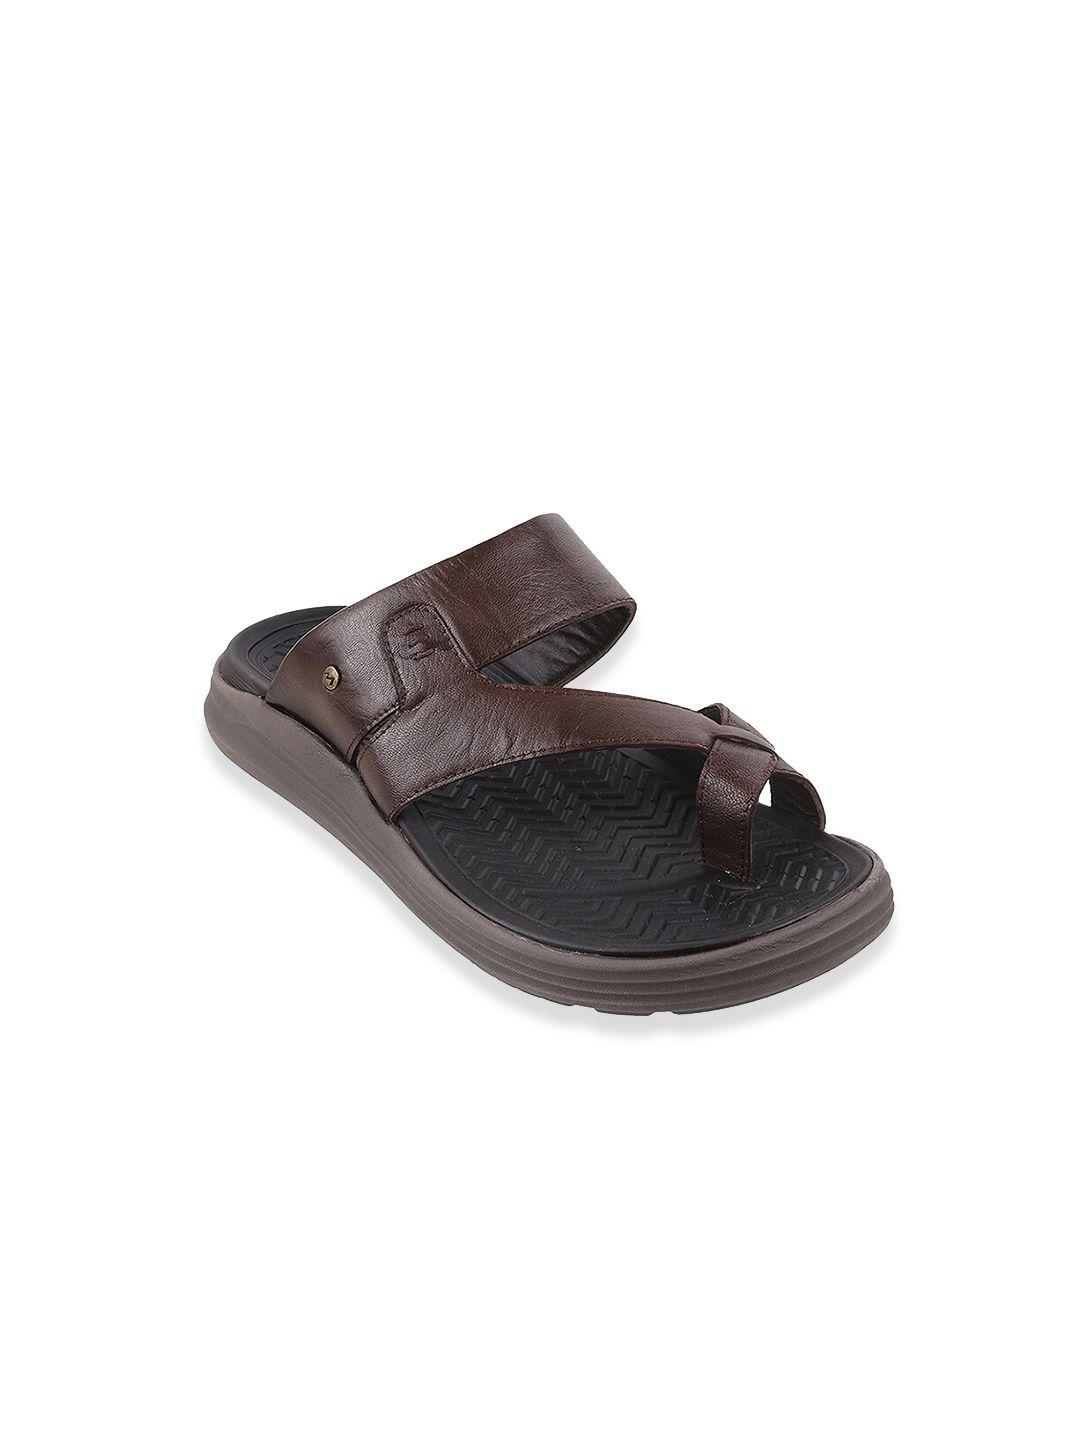 metro men brown leather comfort sandals